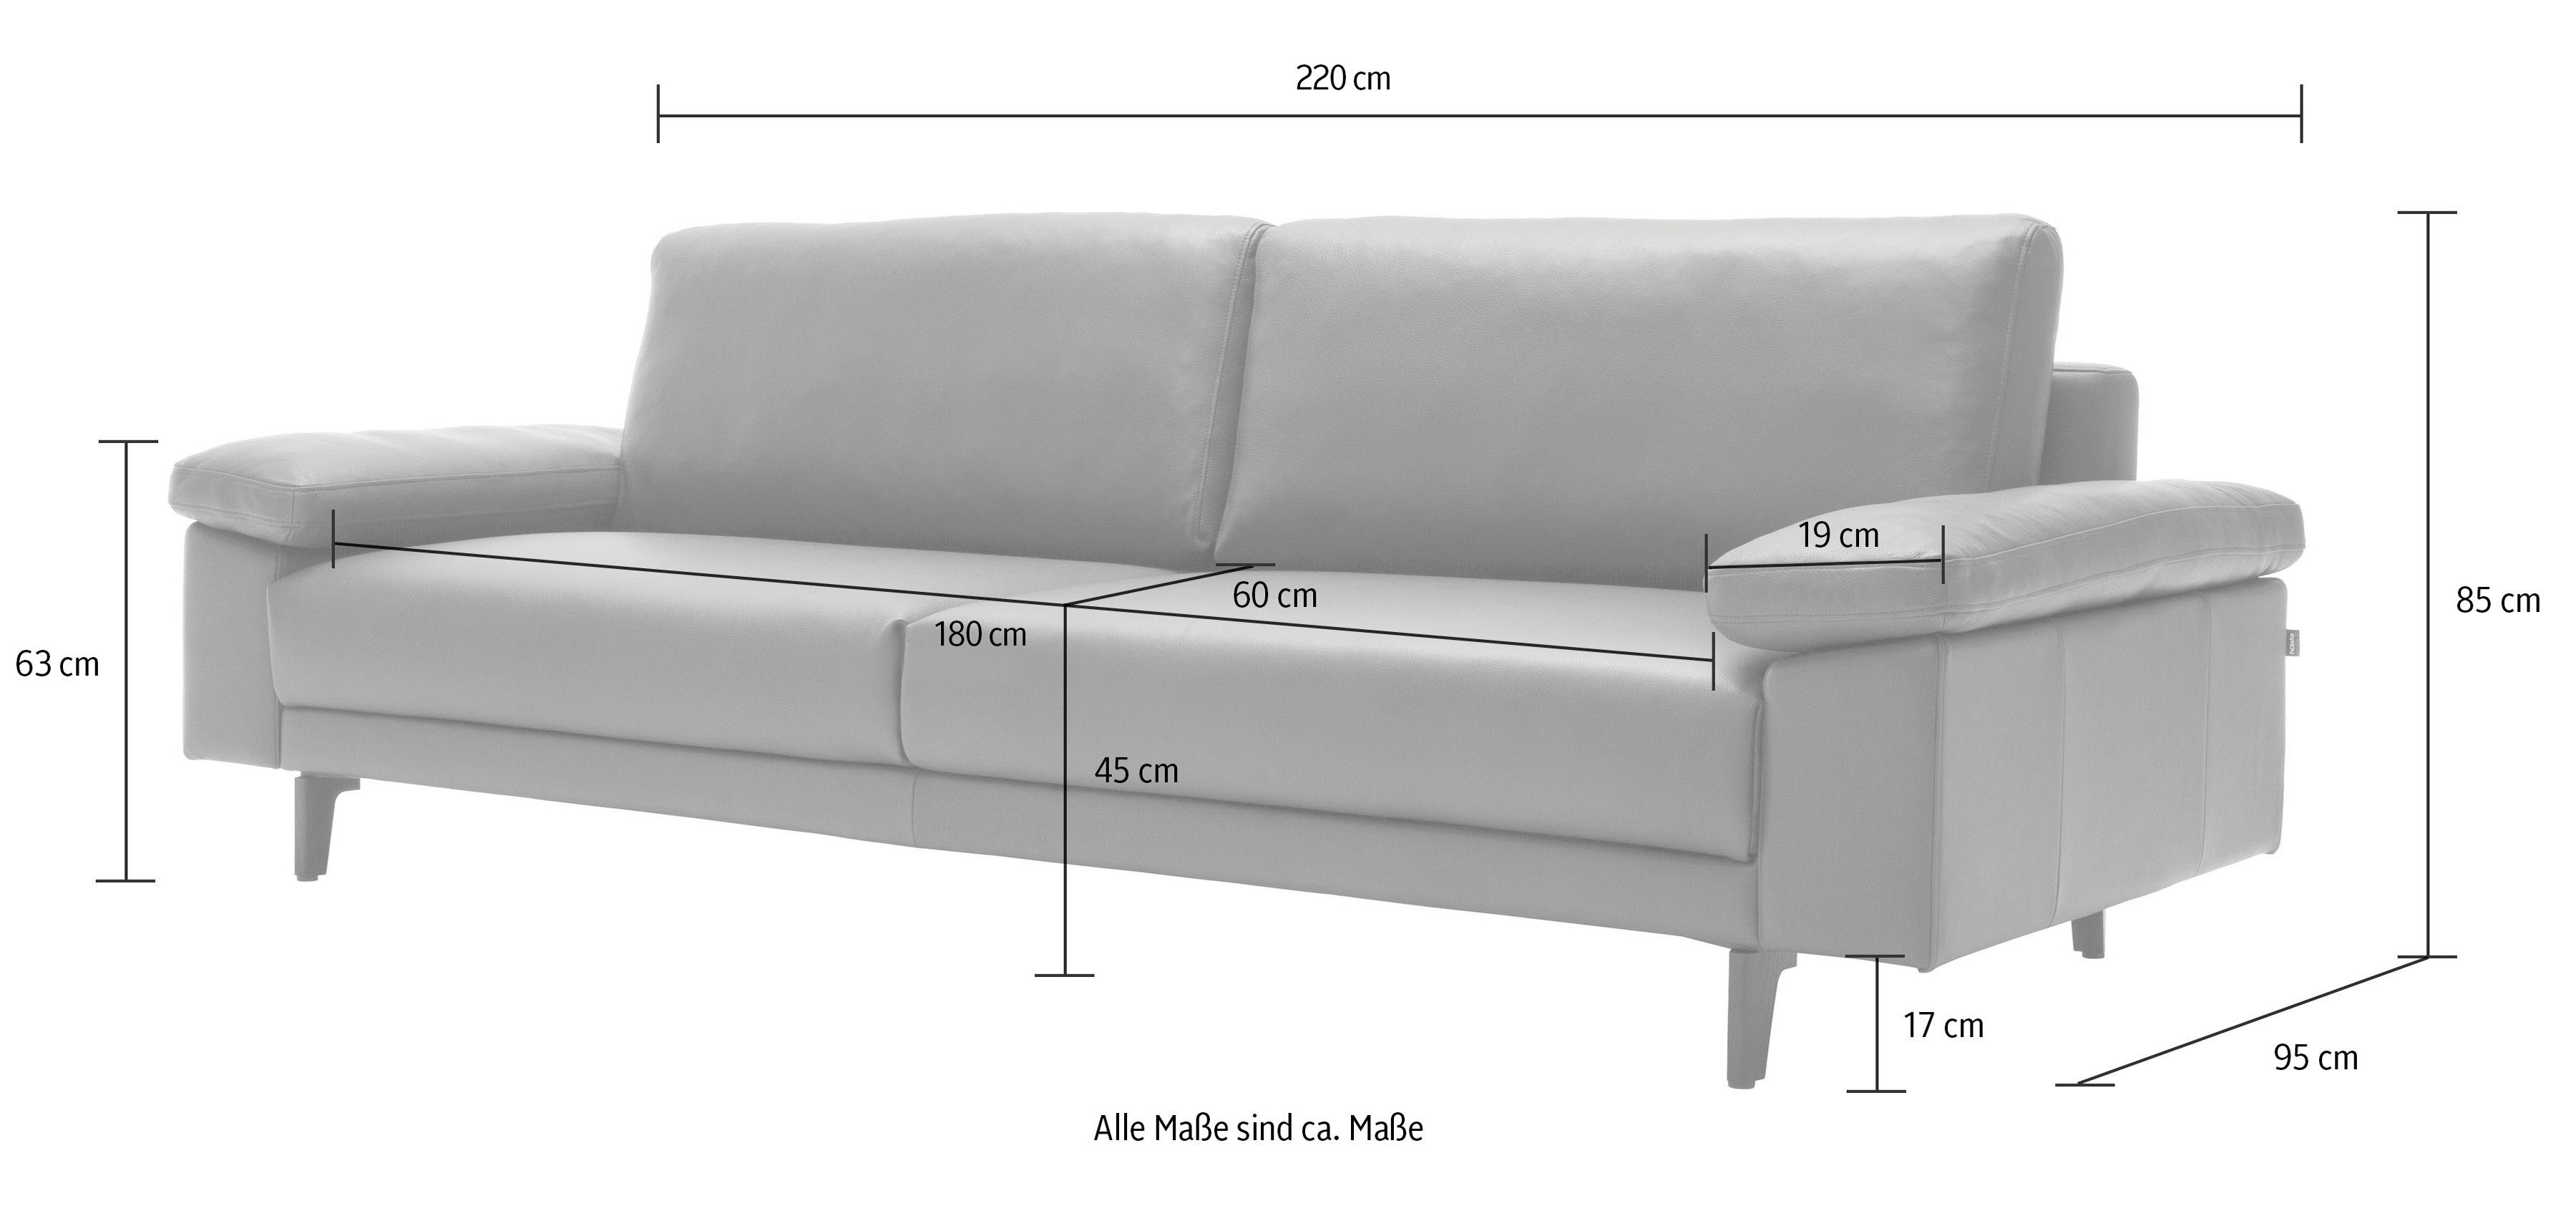 hs.450 hülsta 3-Sitzer sofa